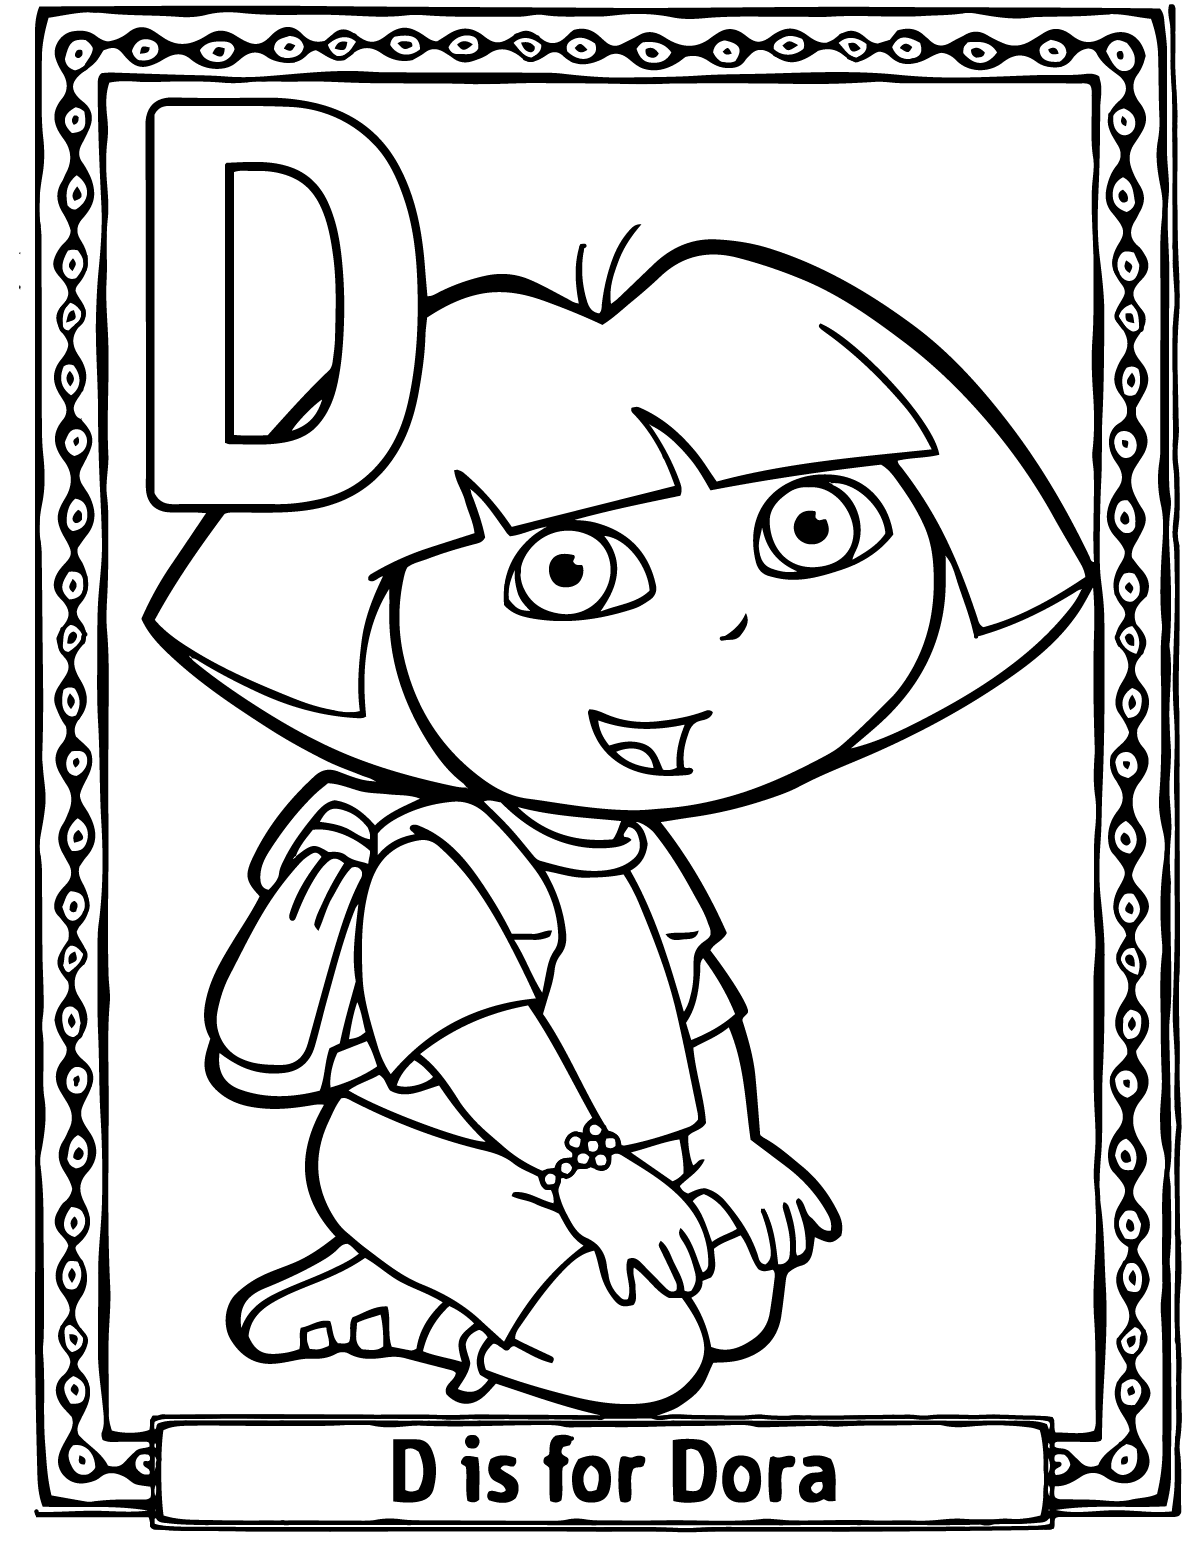 Download Páginas para colorear originales Original coloring pages: El abecedario con Dora la exploradora ...